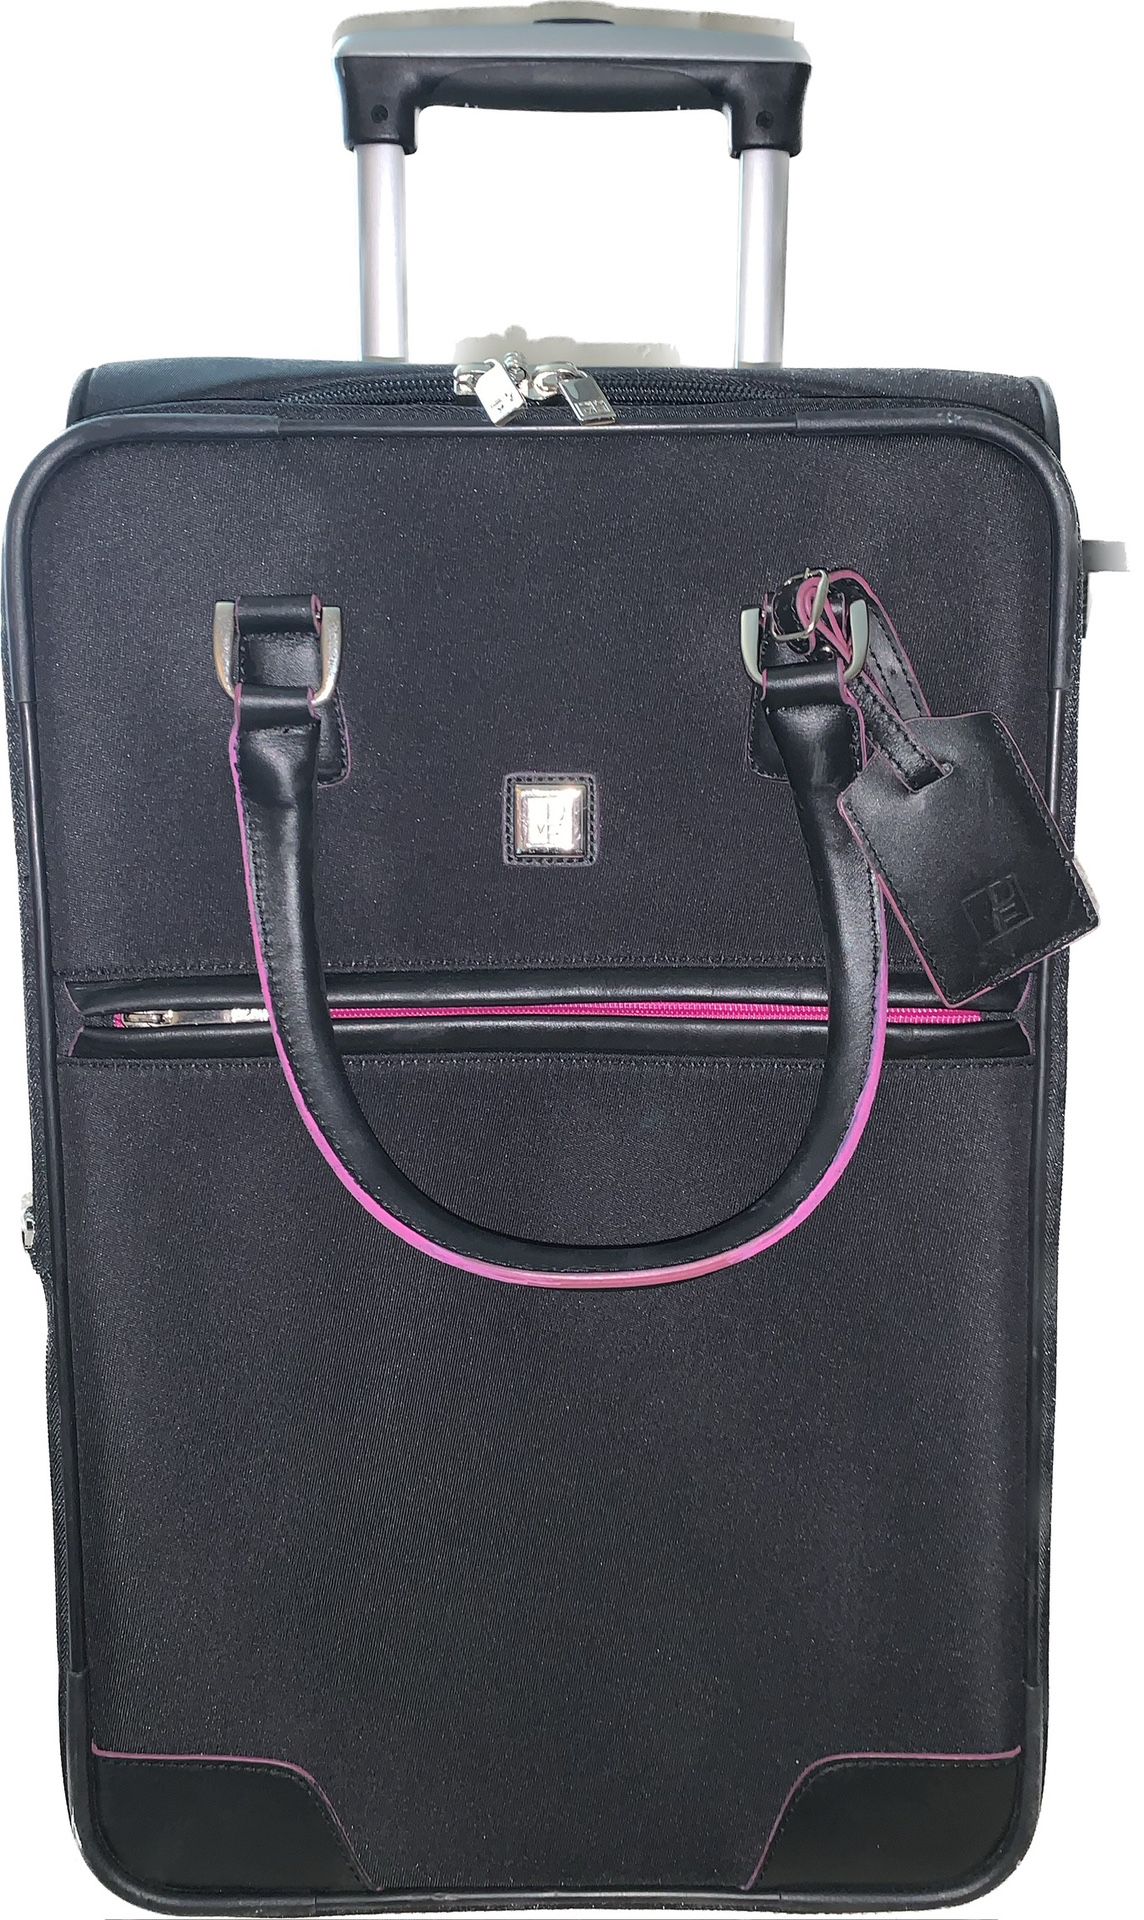 Diane Von Furstenberg 21" Black Carry-On 2-wheel Suitcase